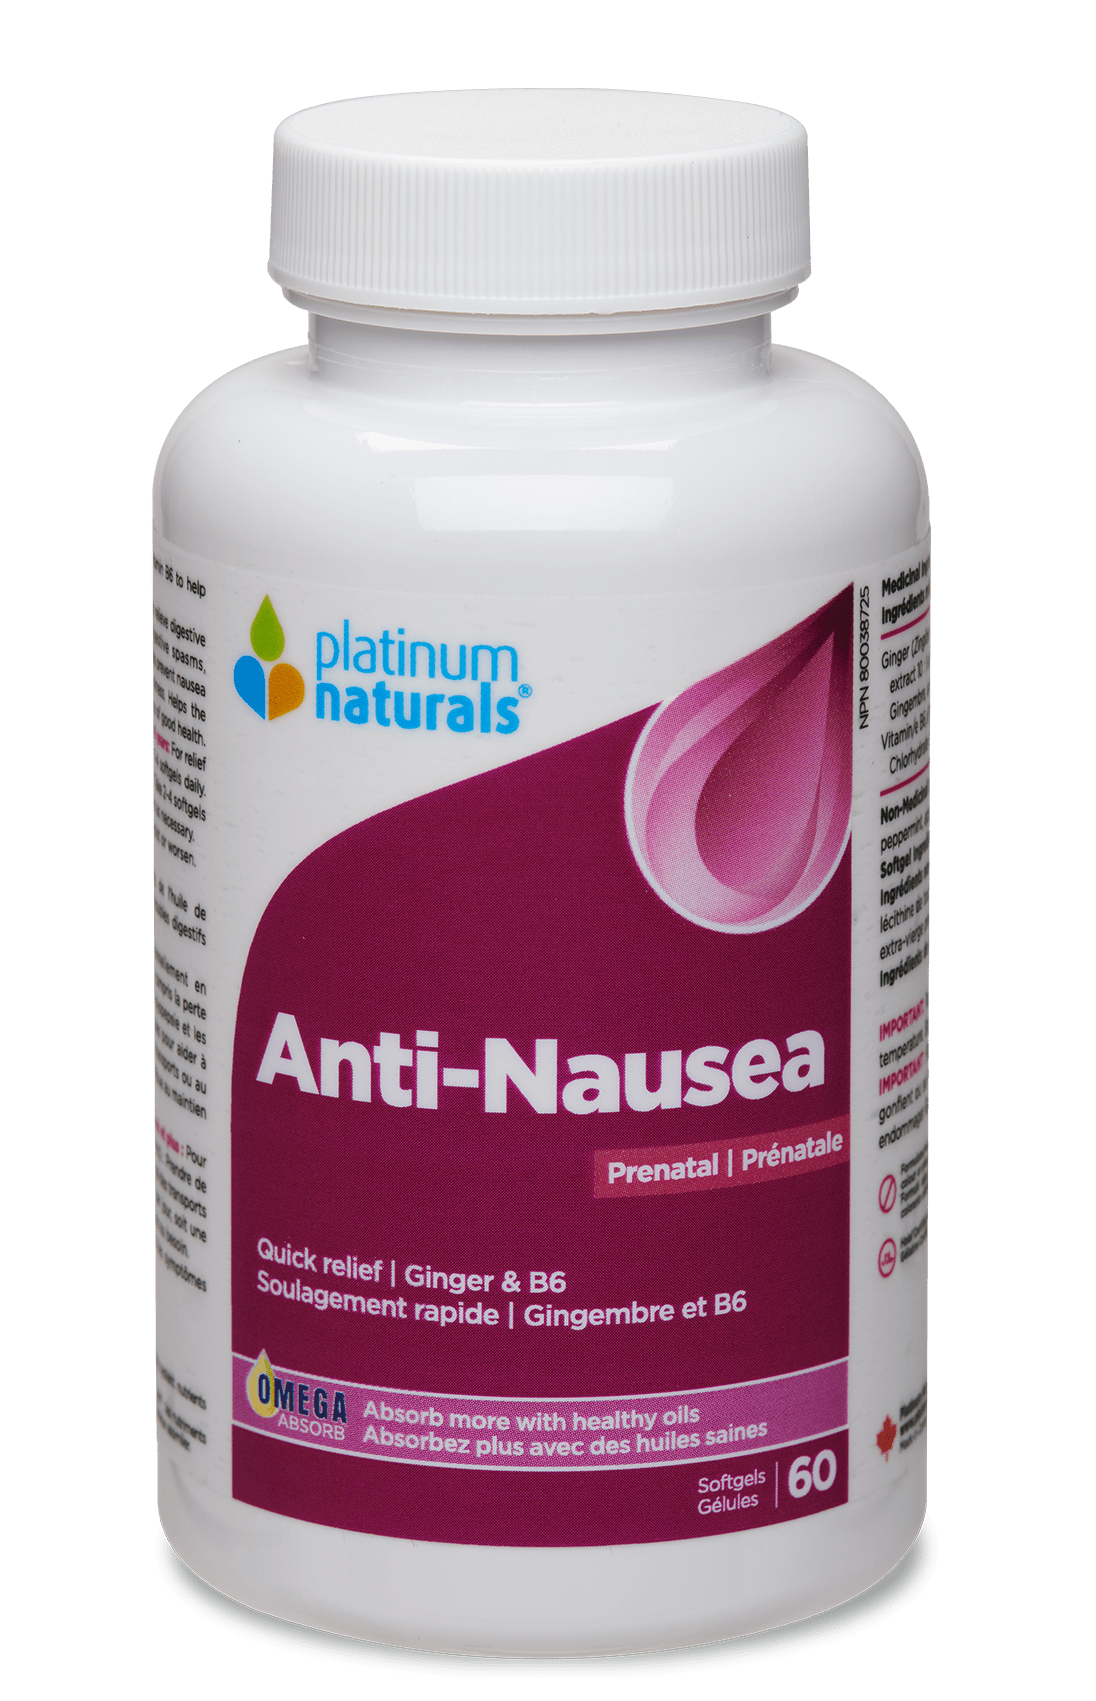 Prenatal Anti-Nausea Prenatal cg-dev-platinumnaturals 60 